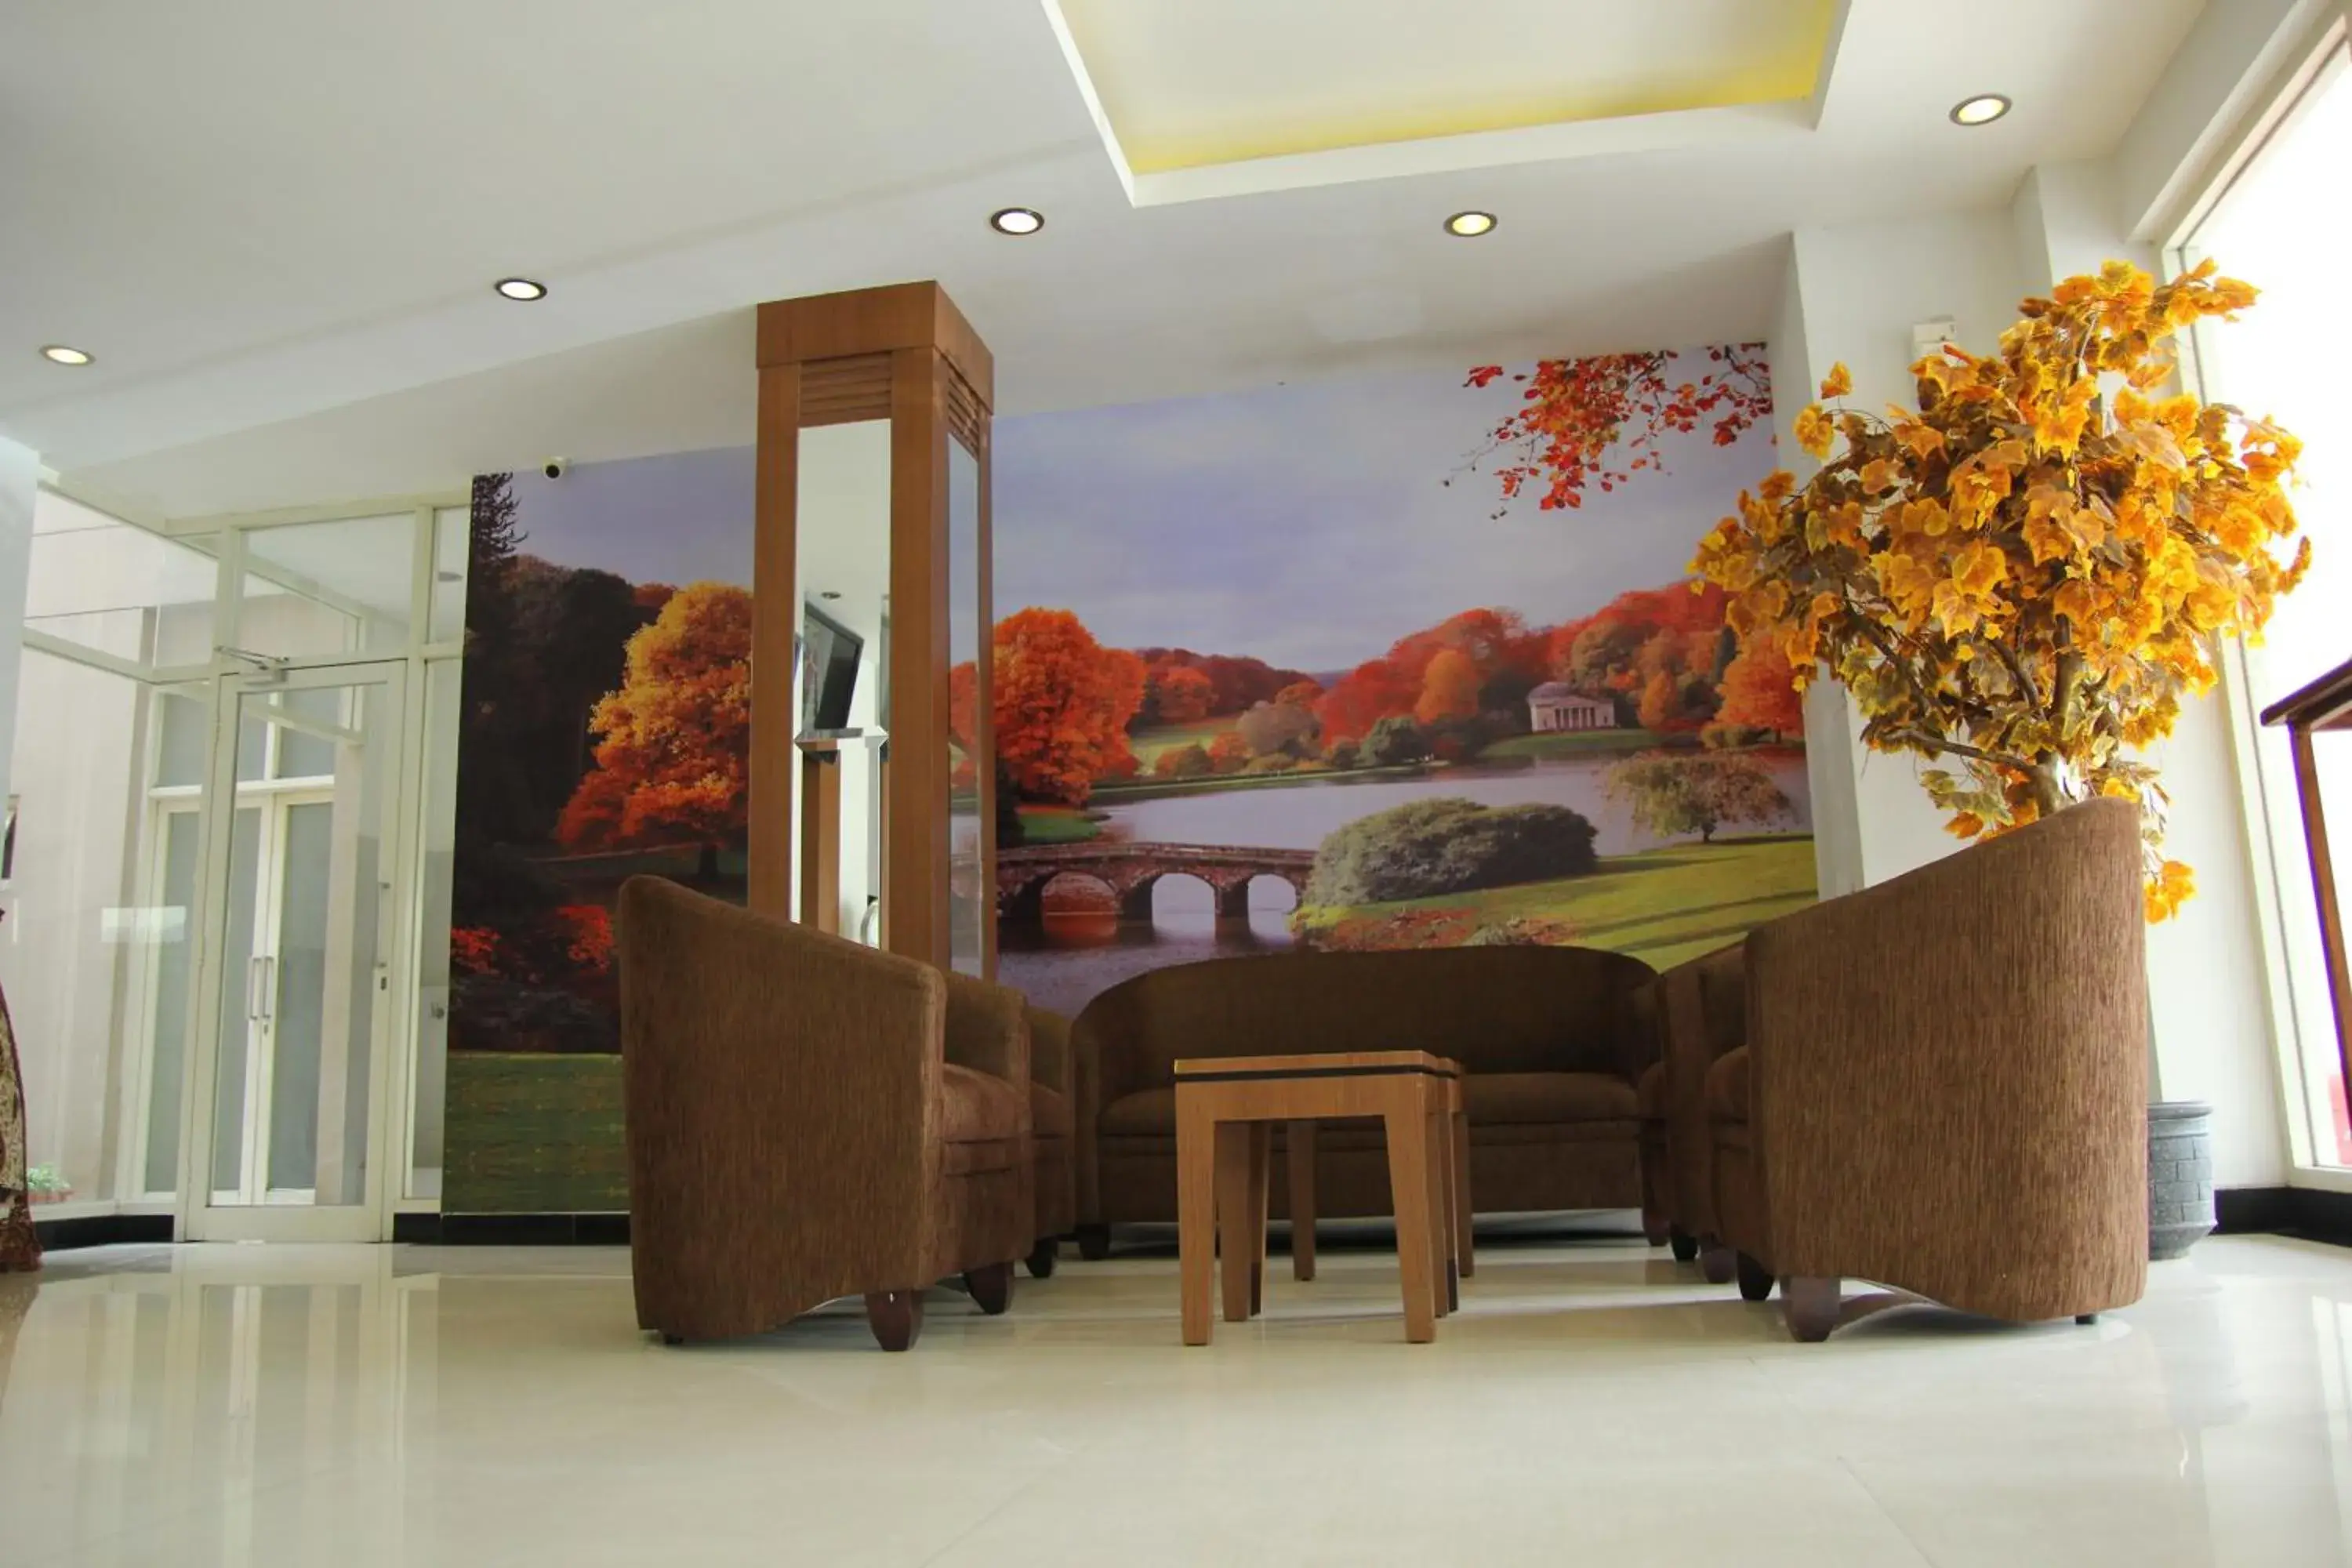 Lobby or reception in Dalu Hotel